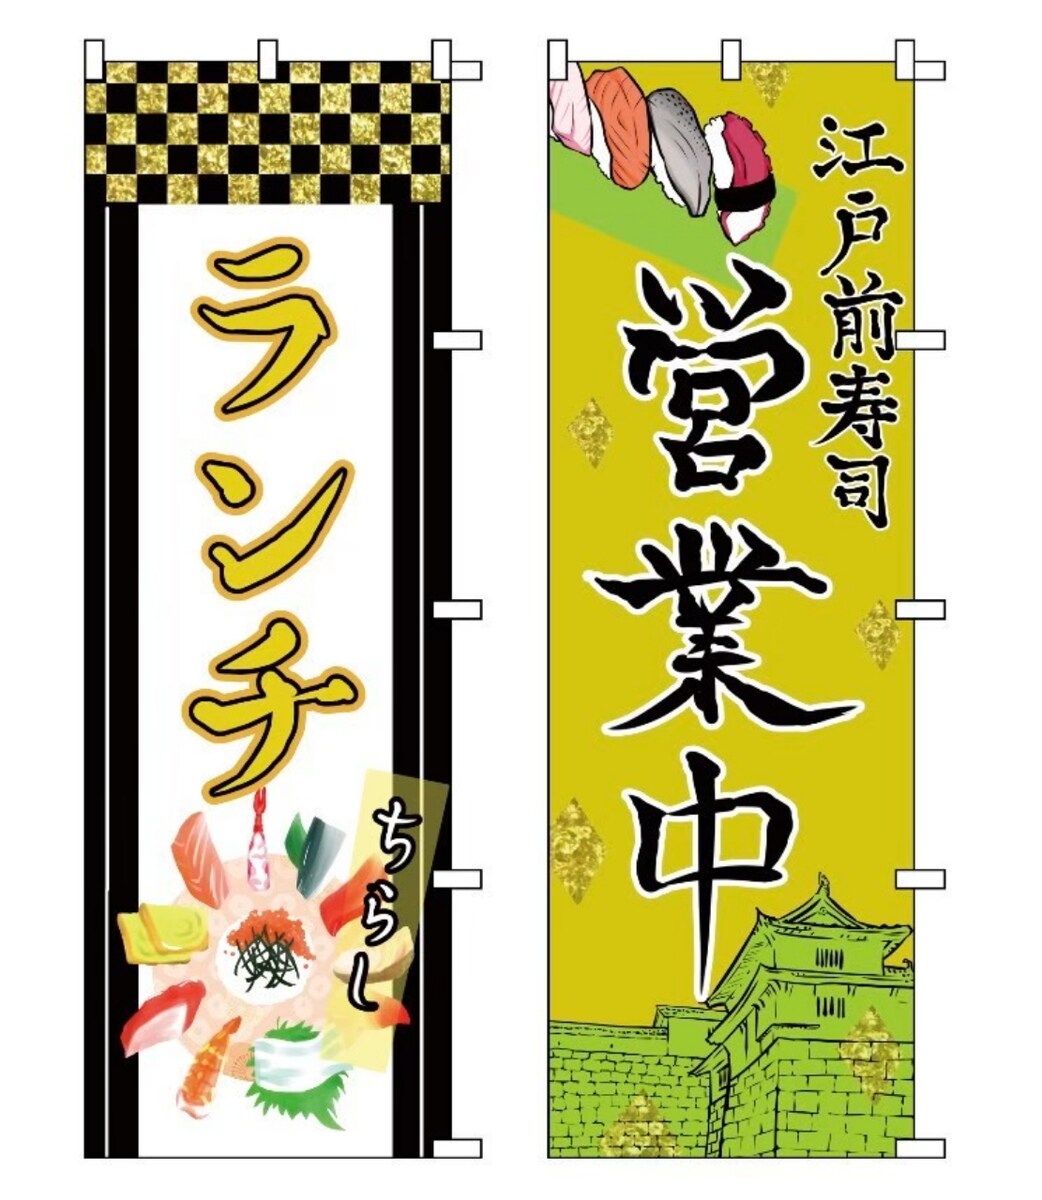 すし伝(寿司店)のノボリのデザイン